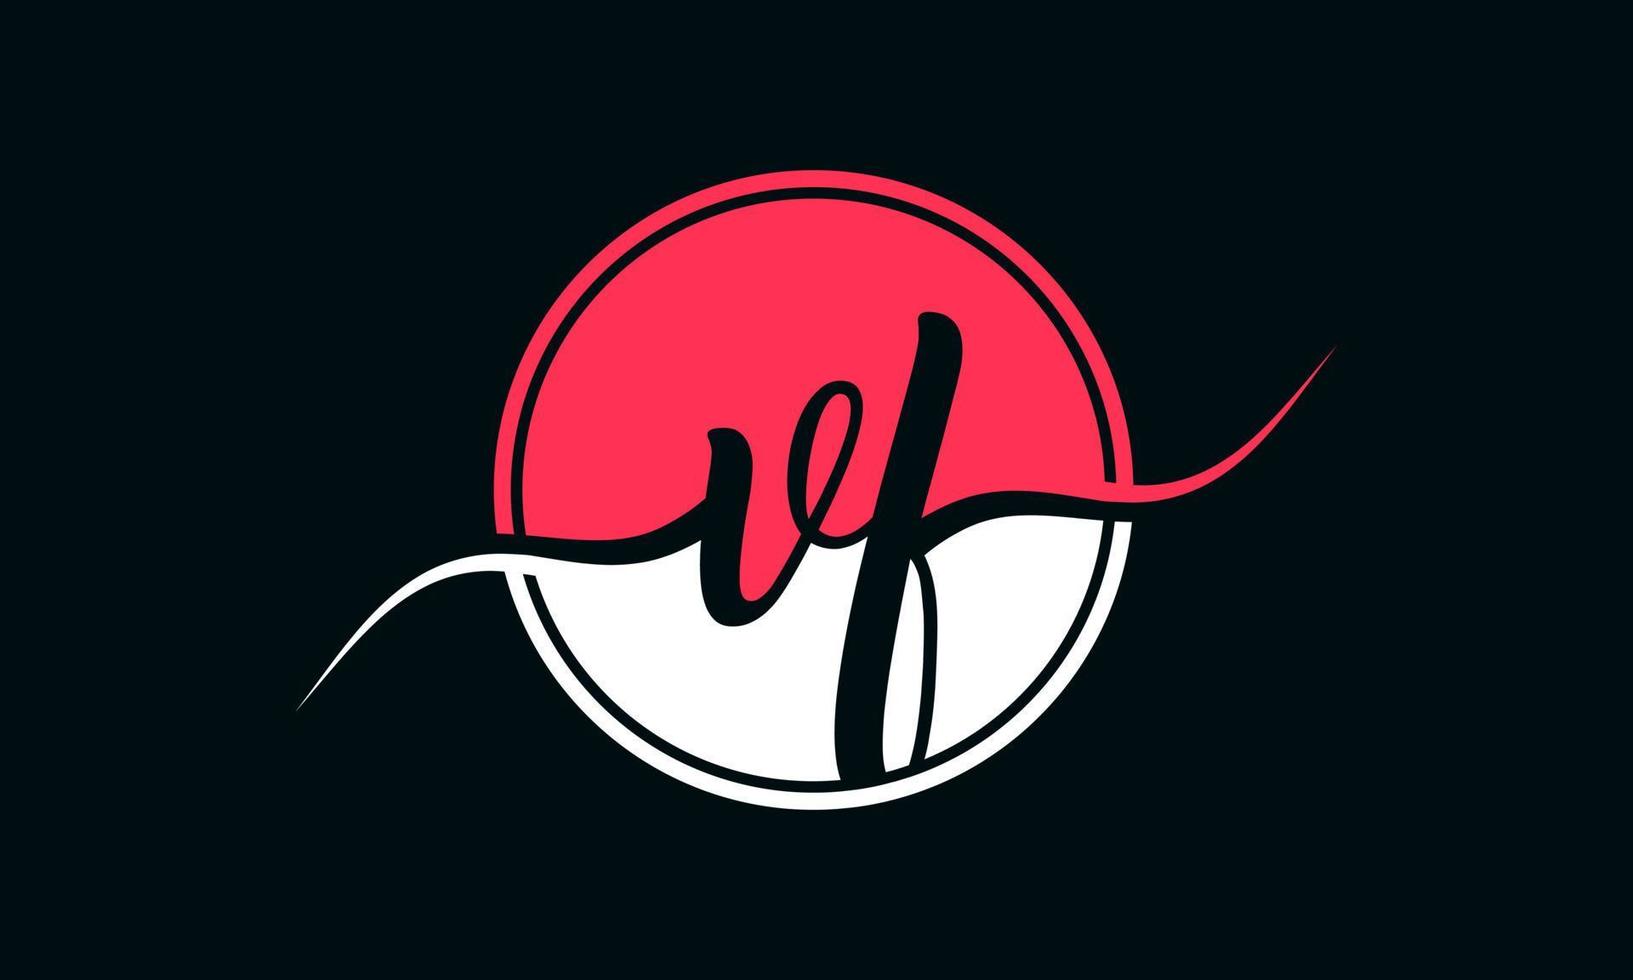 logo initial de la lettre vf avec cercle intérieur de couleur blanche et rose. vecteur professionnel.